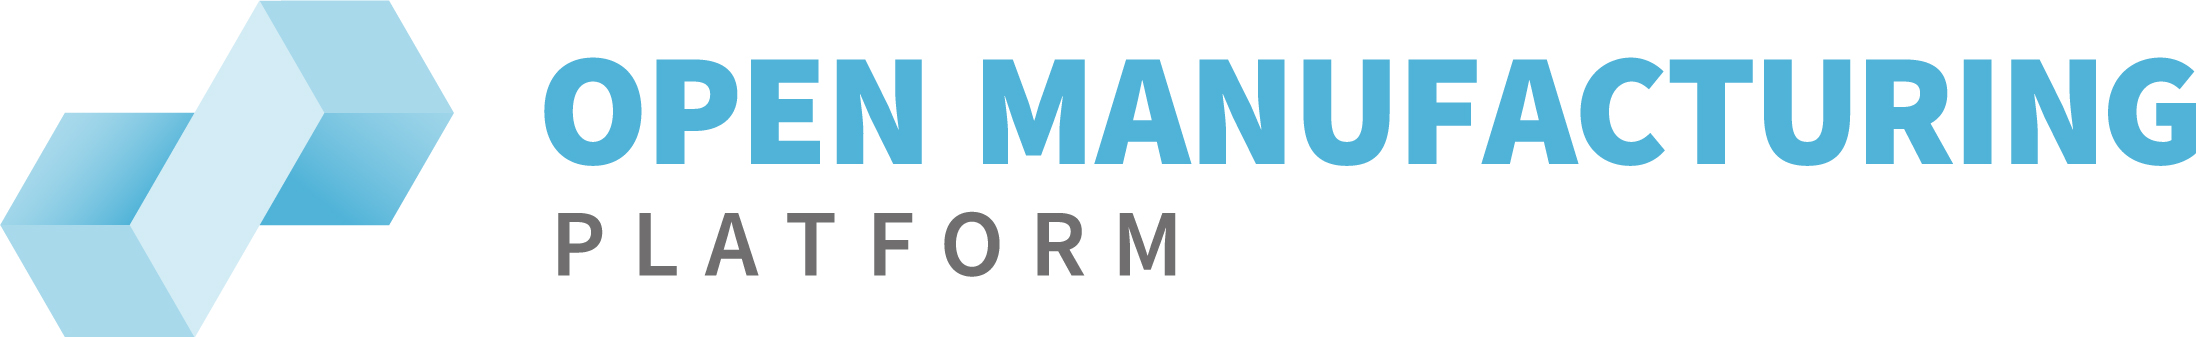 Open Manufacturing Platform logo